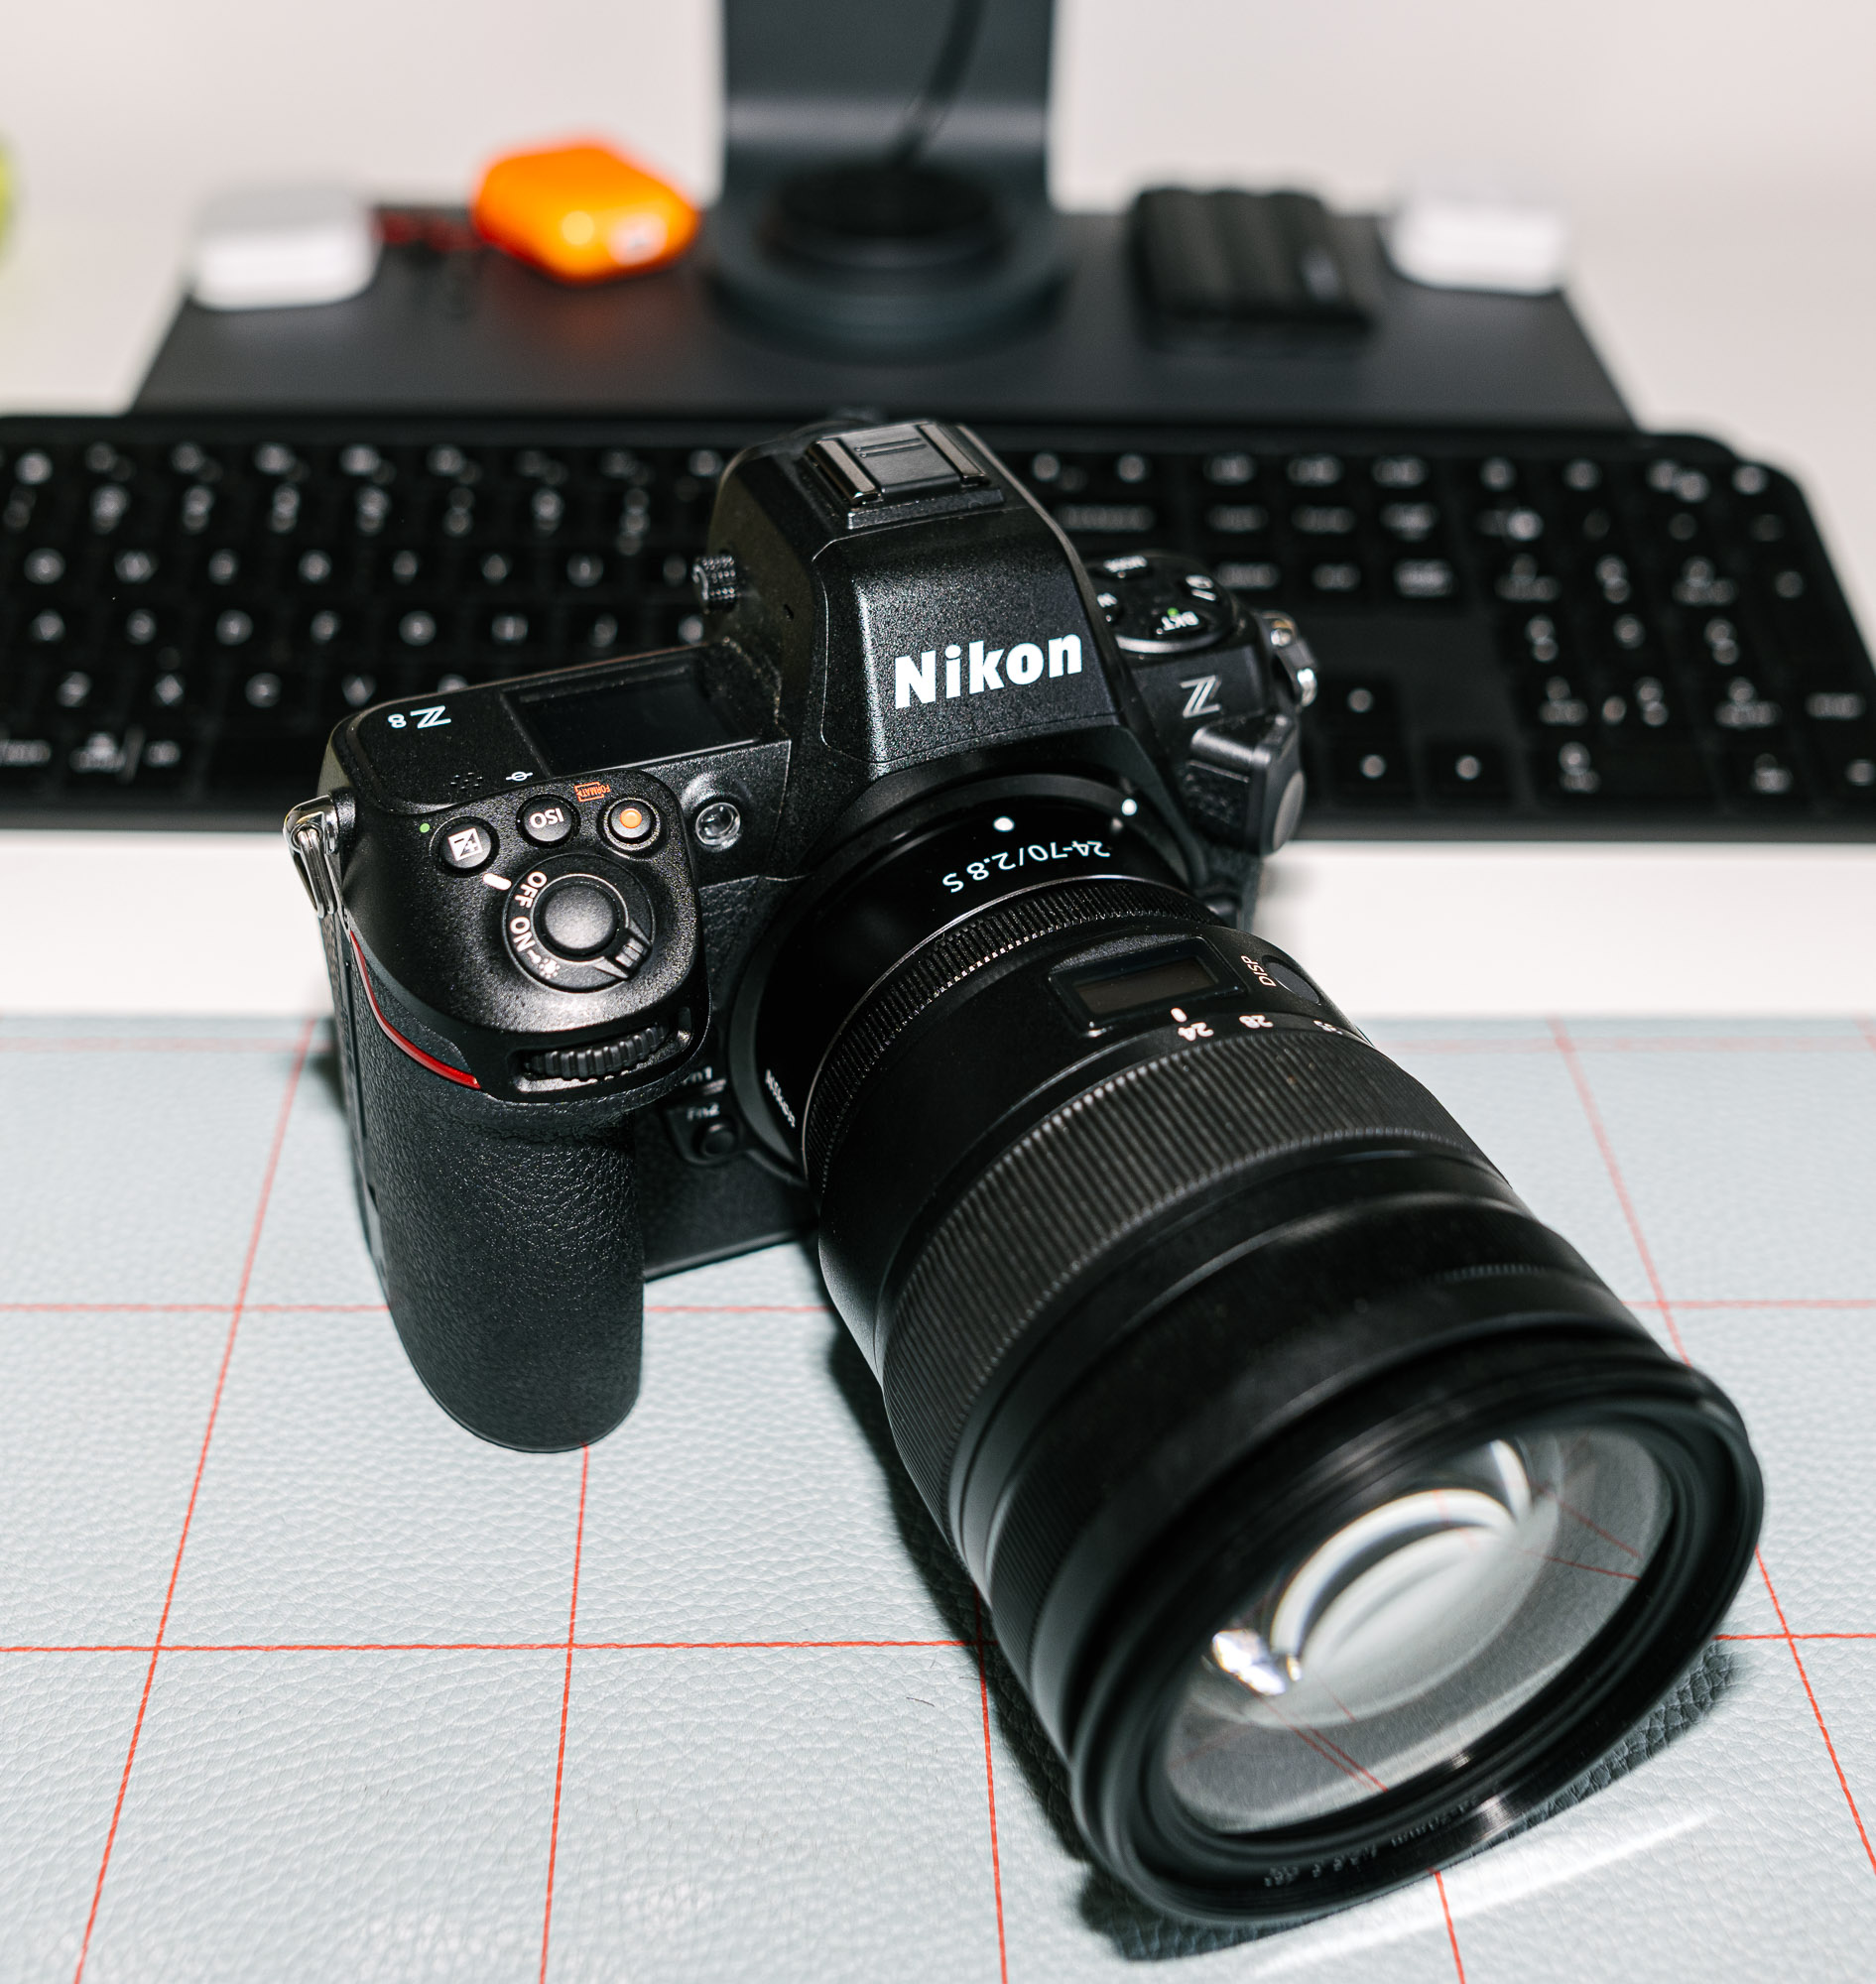 PRONEWS Reviews: The Nikon Z8 - PRONEWS